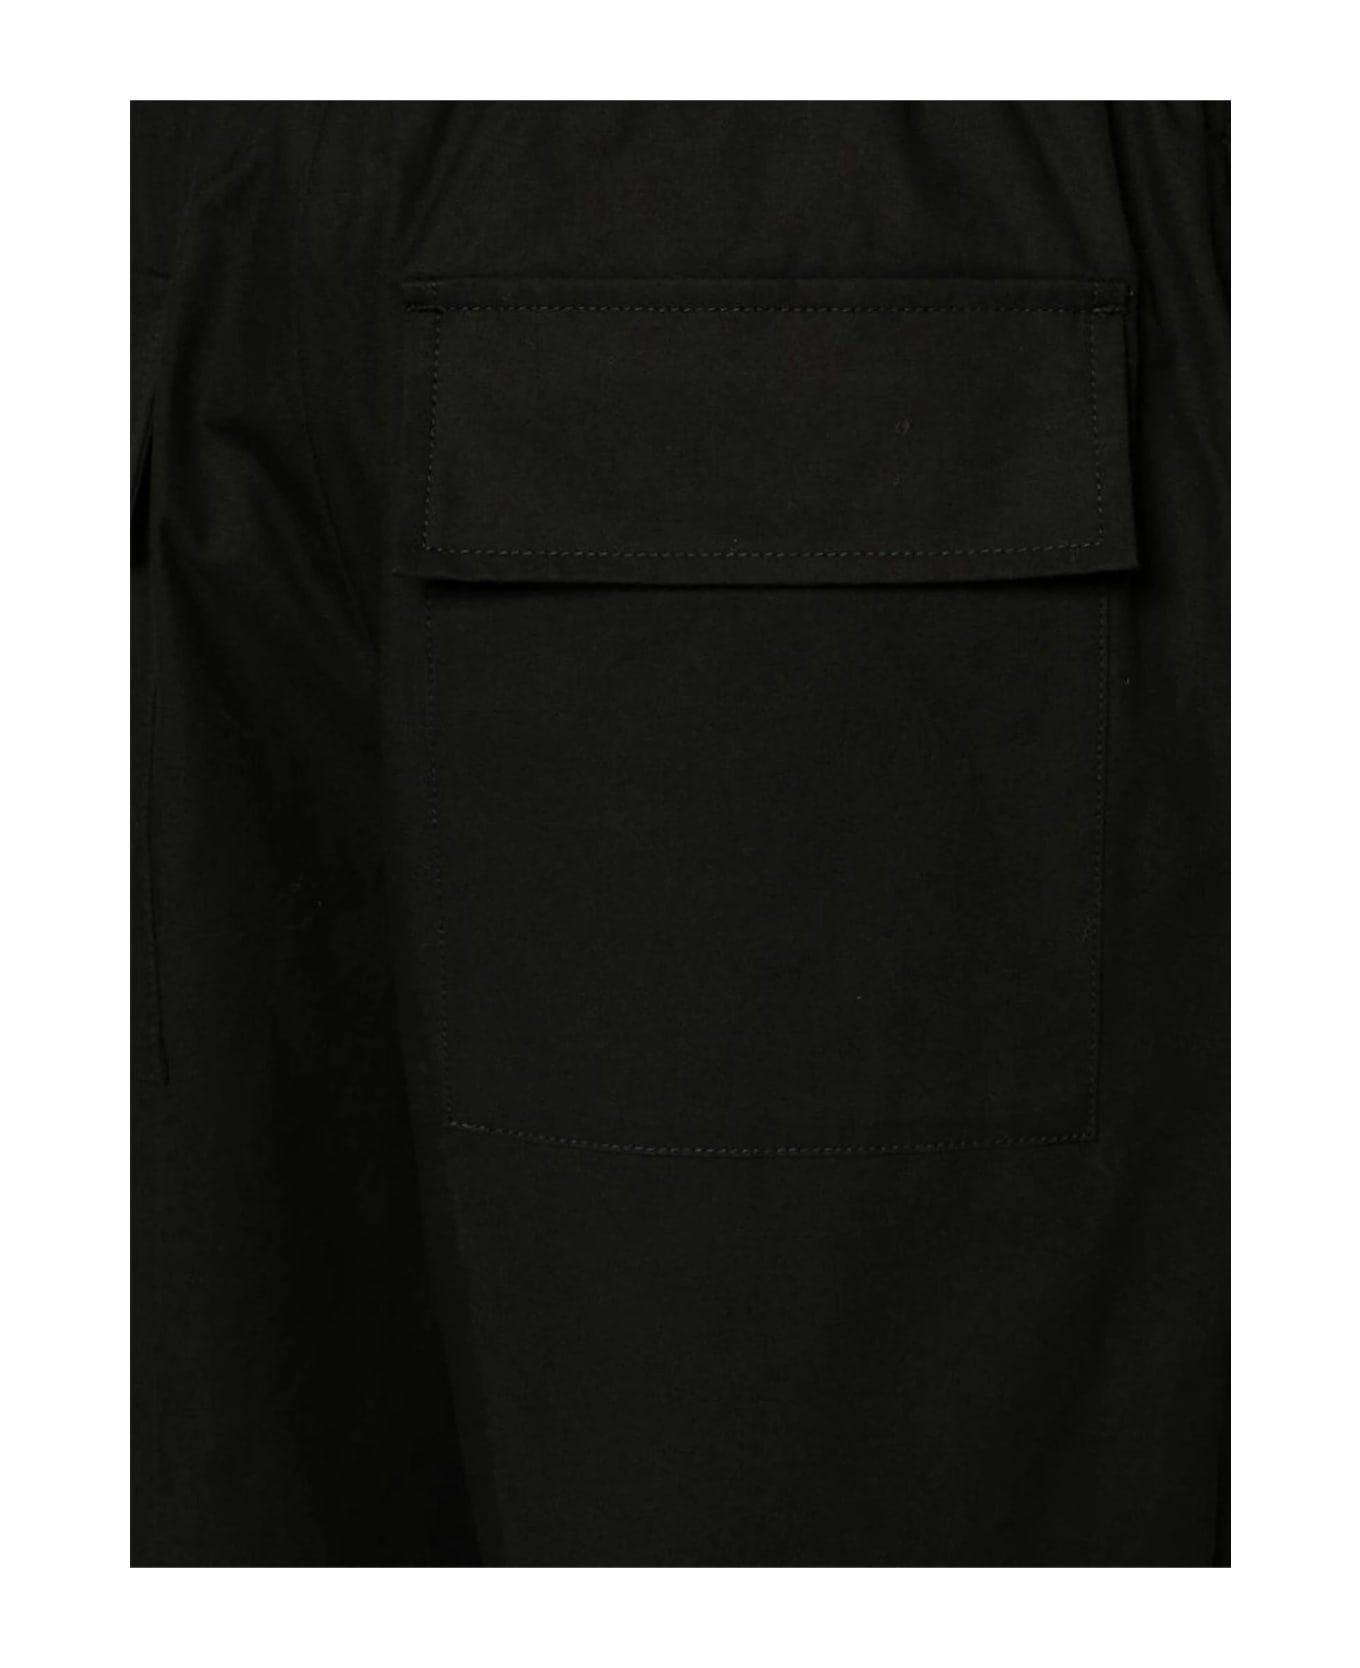 Jil Sander Black Cotton Trousers - Black